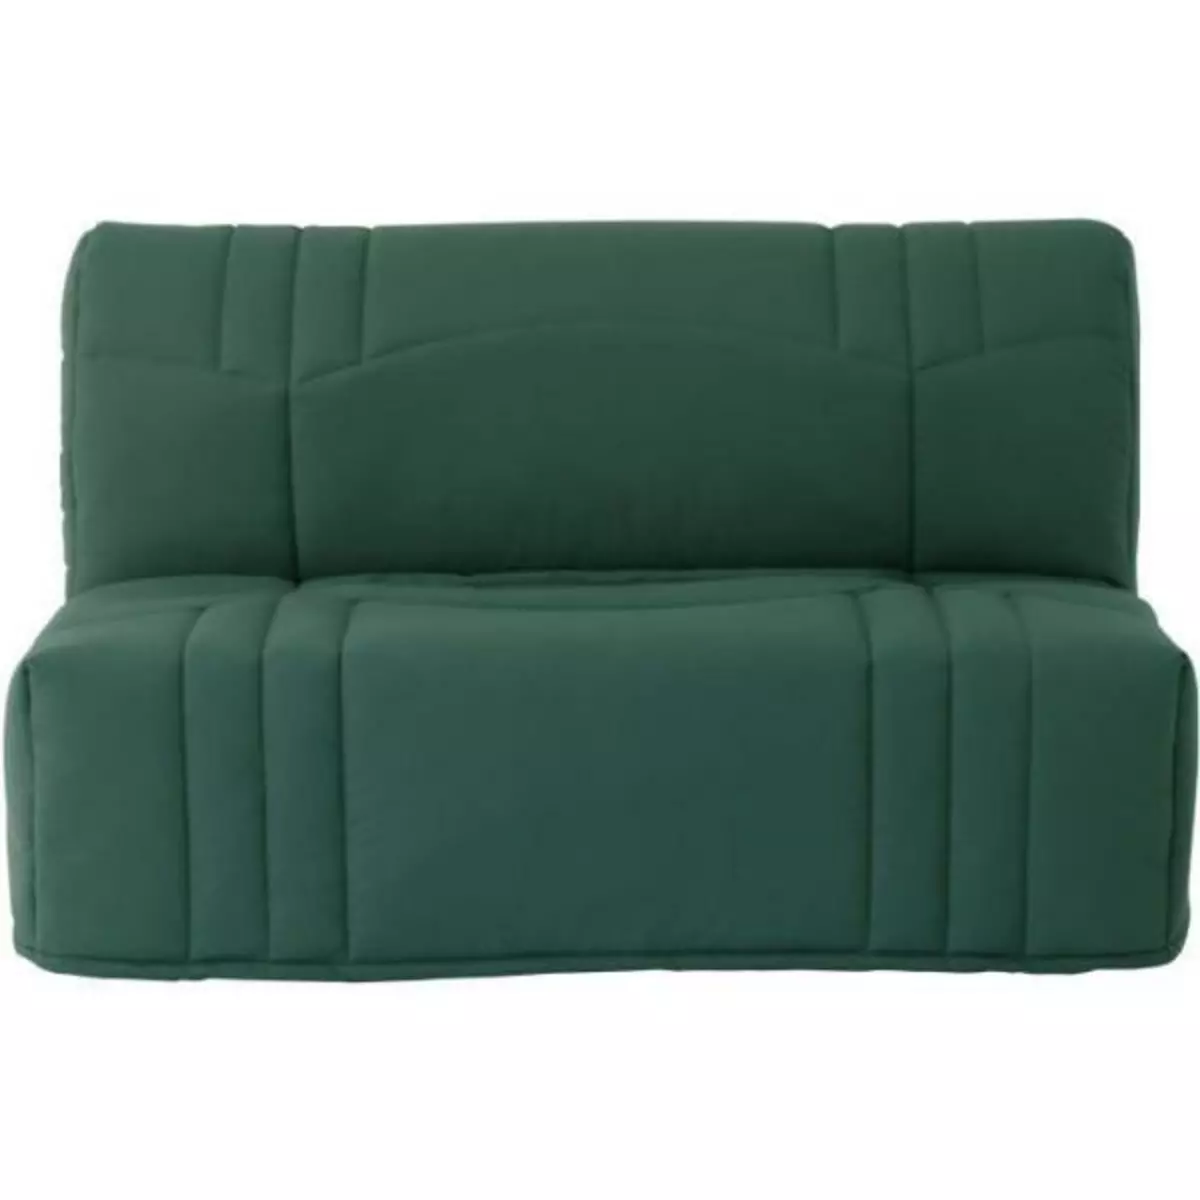 MARKET24 Banquette BZ DREAM - Tissu 100% Coton vert foret - Couchage 140x190 cm - Confort moelleux